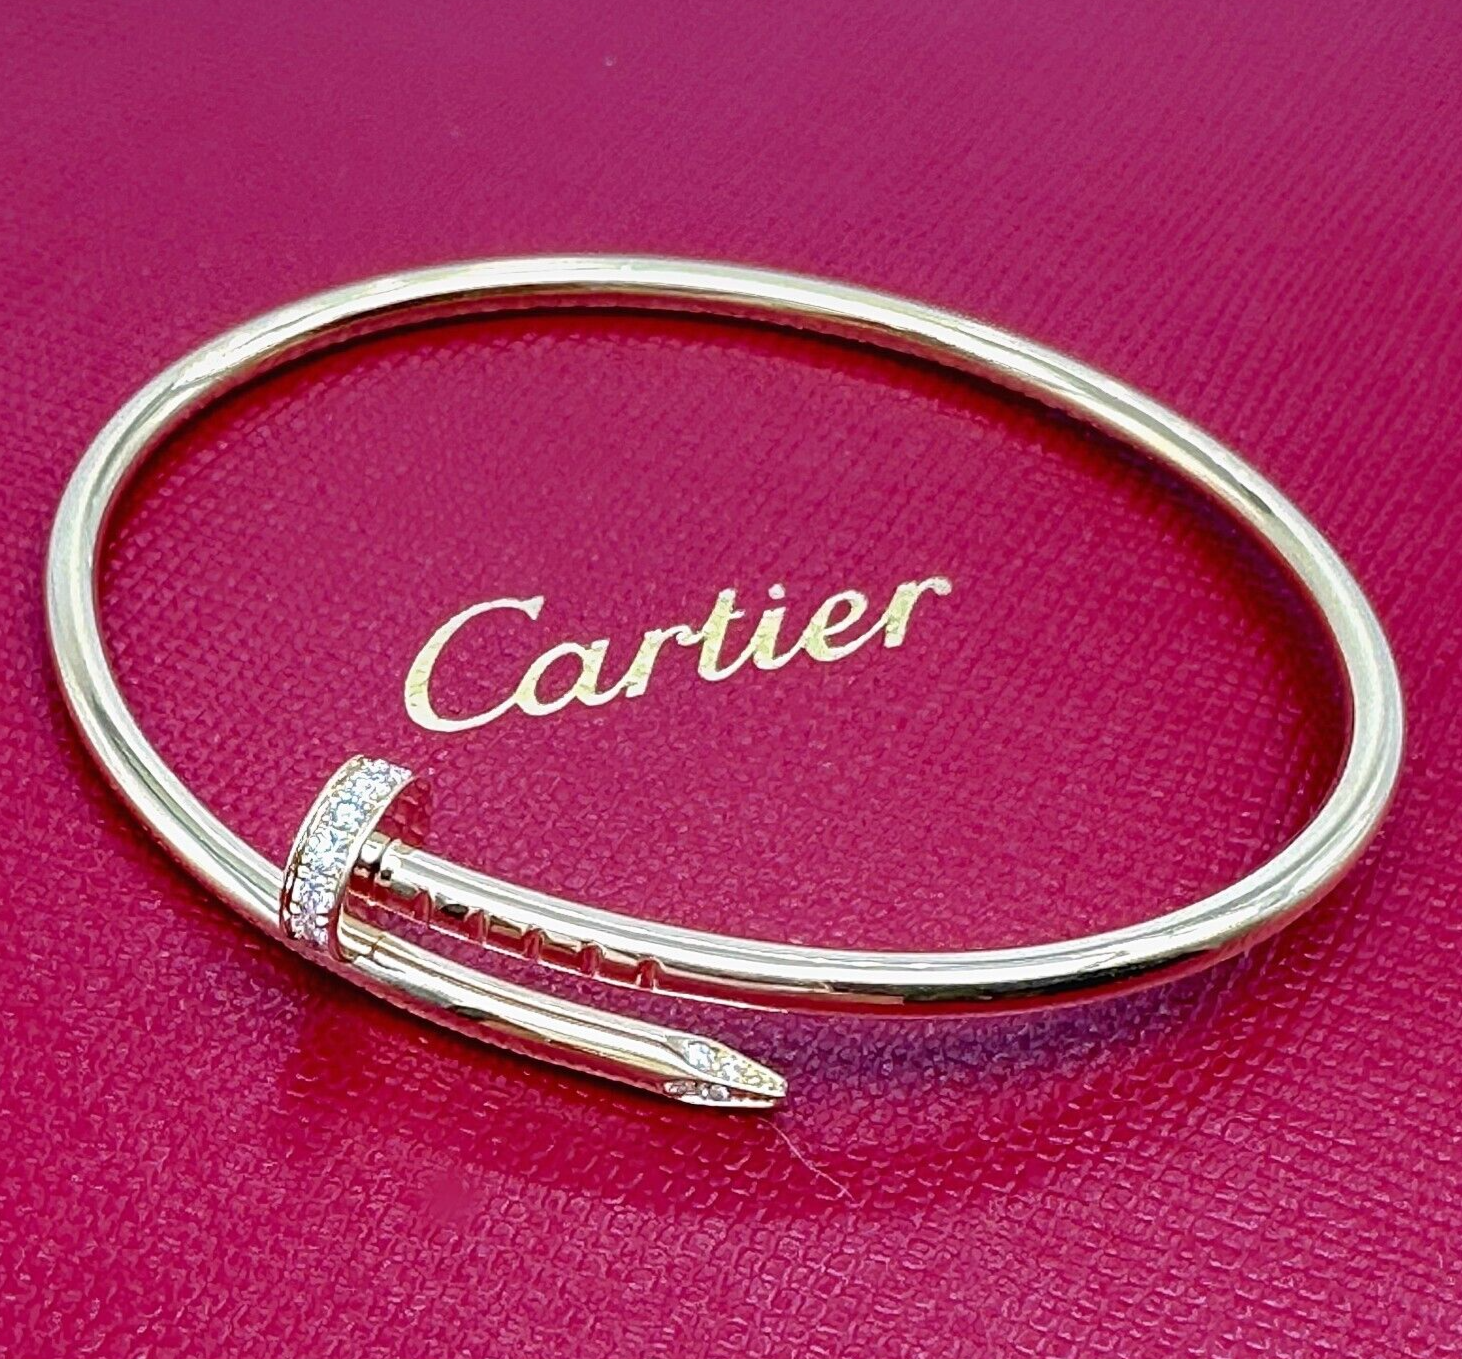 All About the Cartier Juste un Clou Bracelet